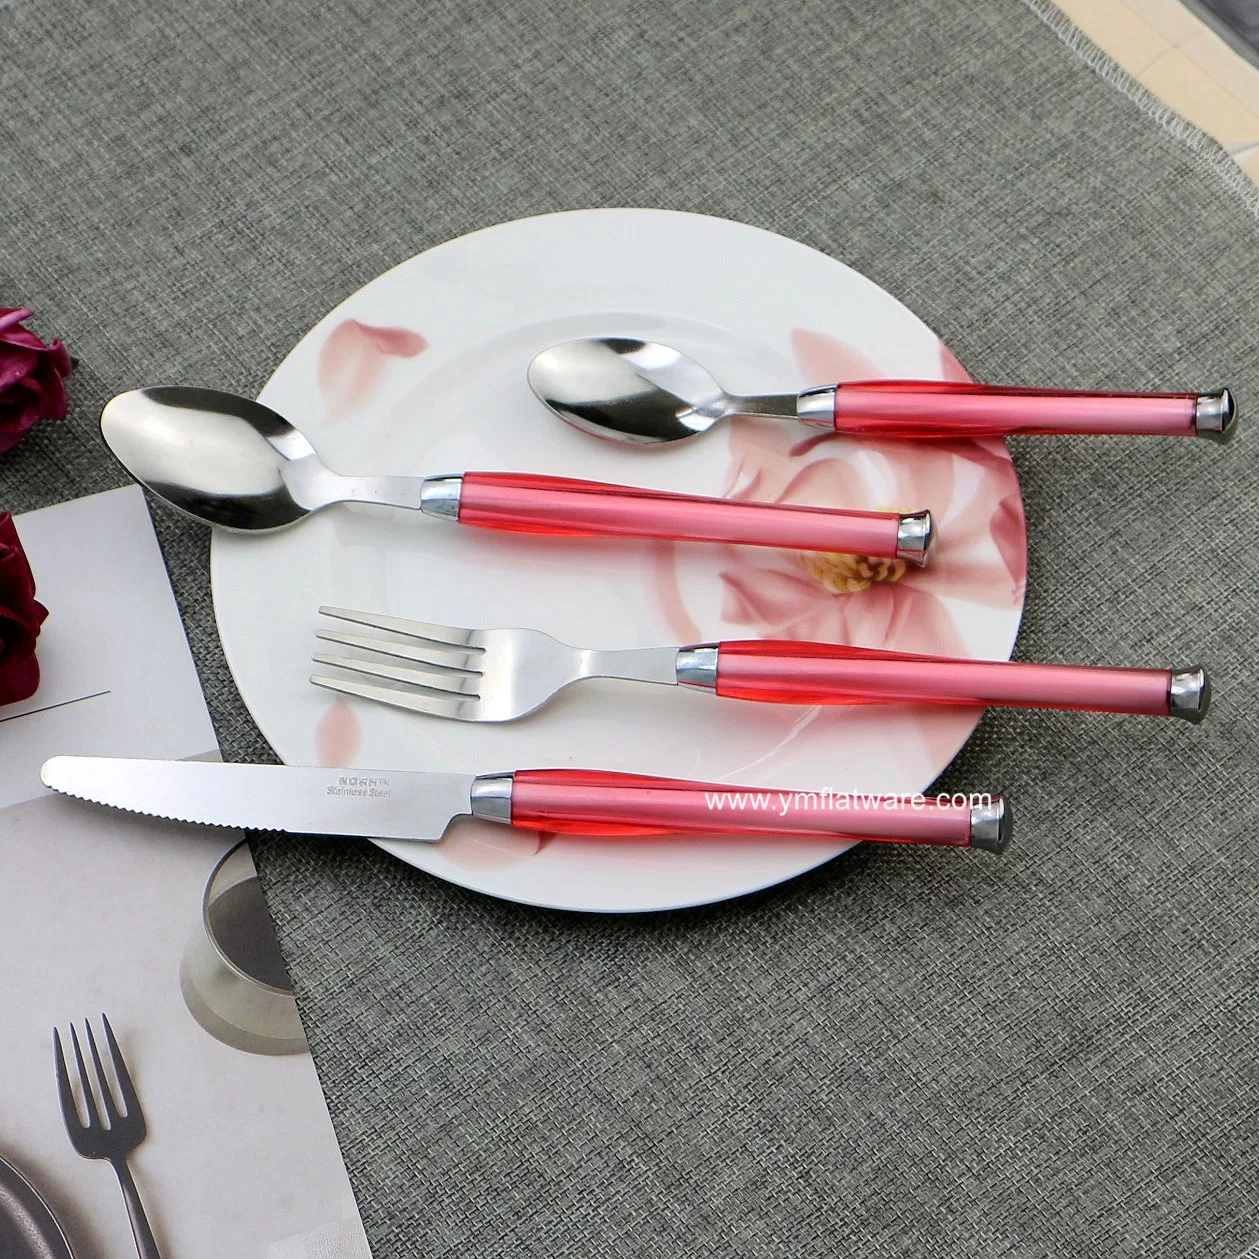 أدوات المائدة الشفافة وردية اللون وردية اللون وردية اللون وردية اللون بدون أكمام مع 24 قطعة من البلاستيك